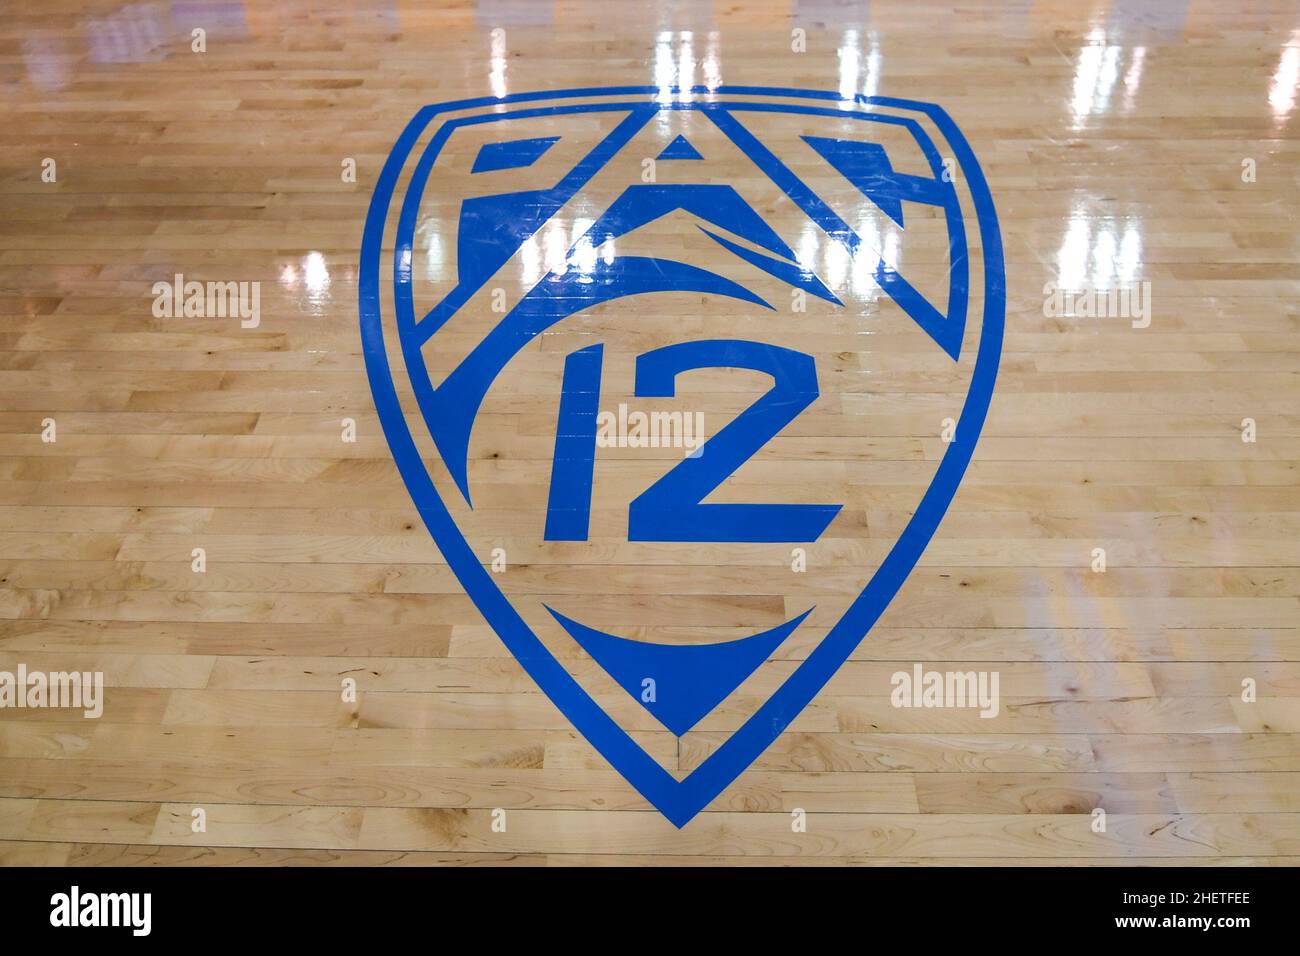 Vue détaillée du logo PAC-12 en milieu de terrain après un match de basket-ball de la NCAA entre les Bruins de l'UCLA et le long Beach State 49ers, le jeudi 6 janvier, Banque D'Images